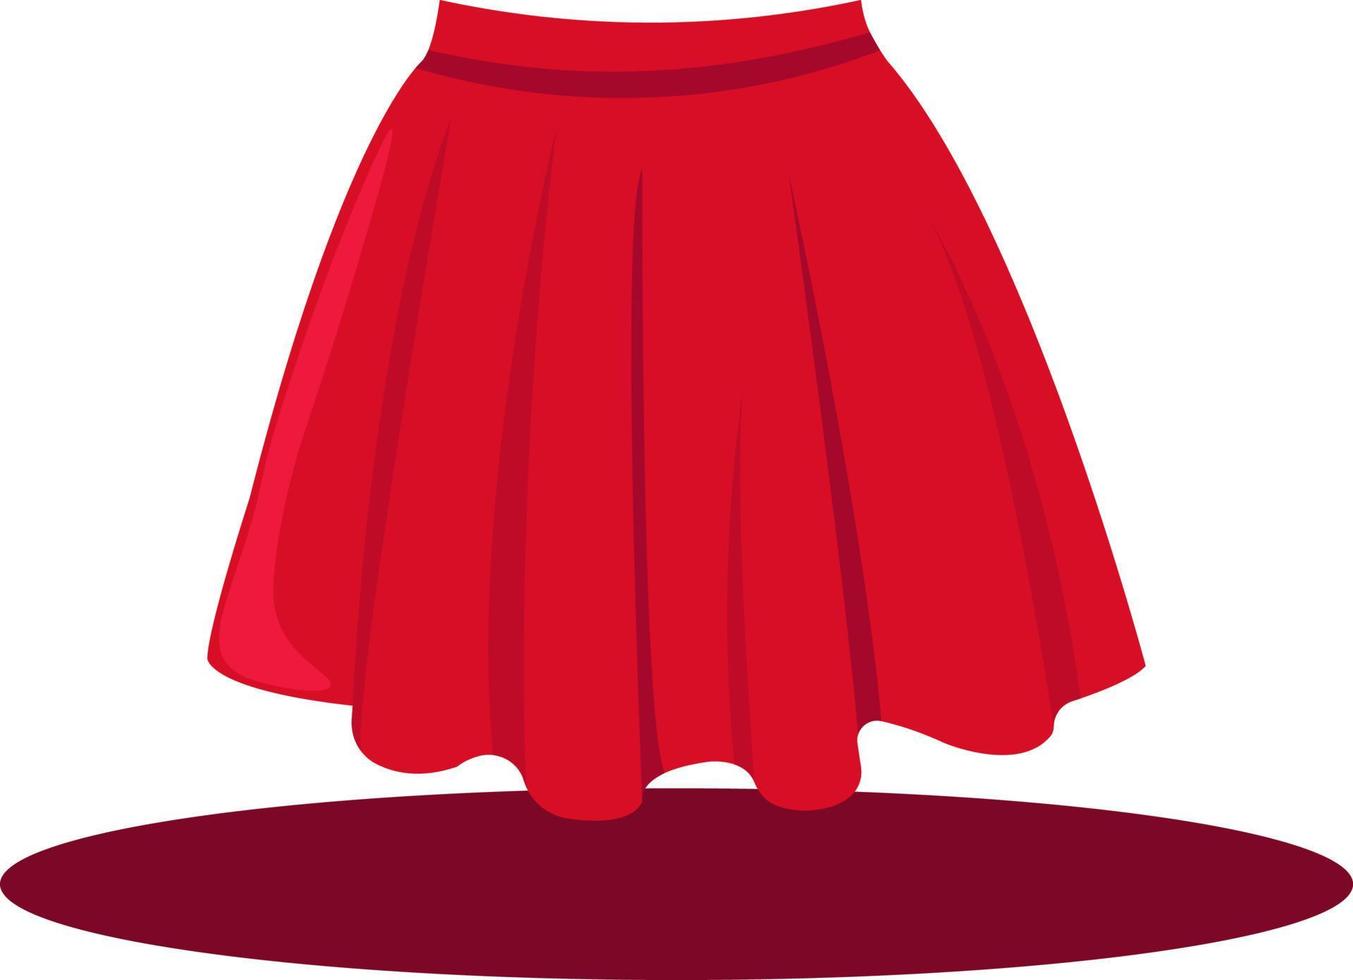 roter Frauenrock, Illustration, Vektor auf weißem Hintergrund.